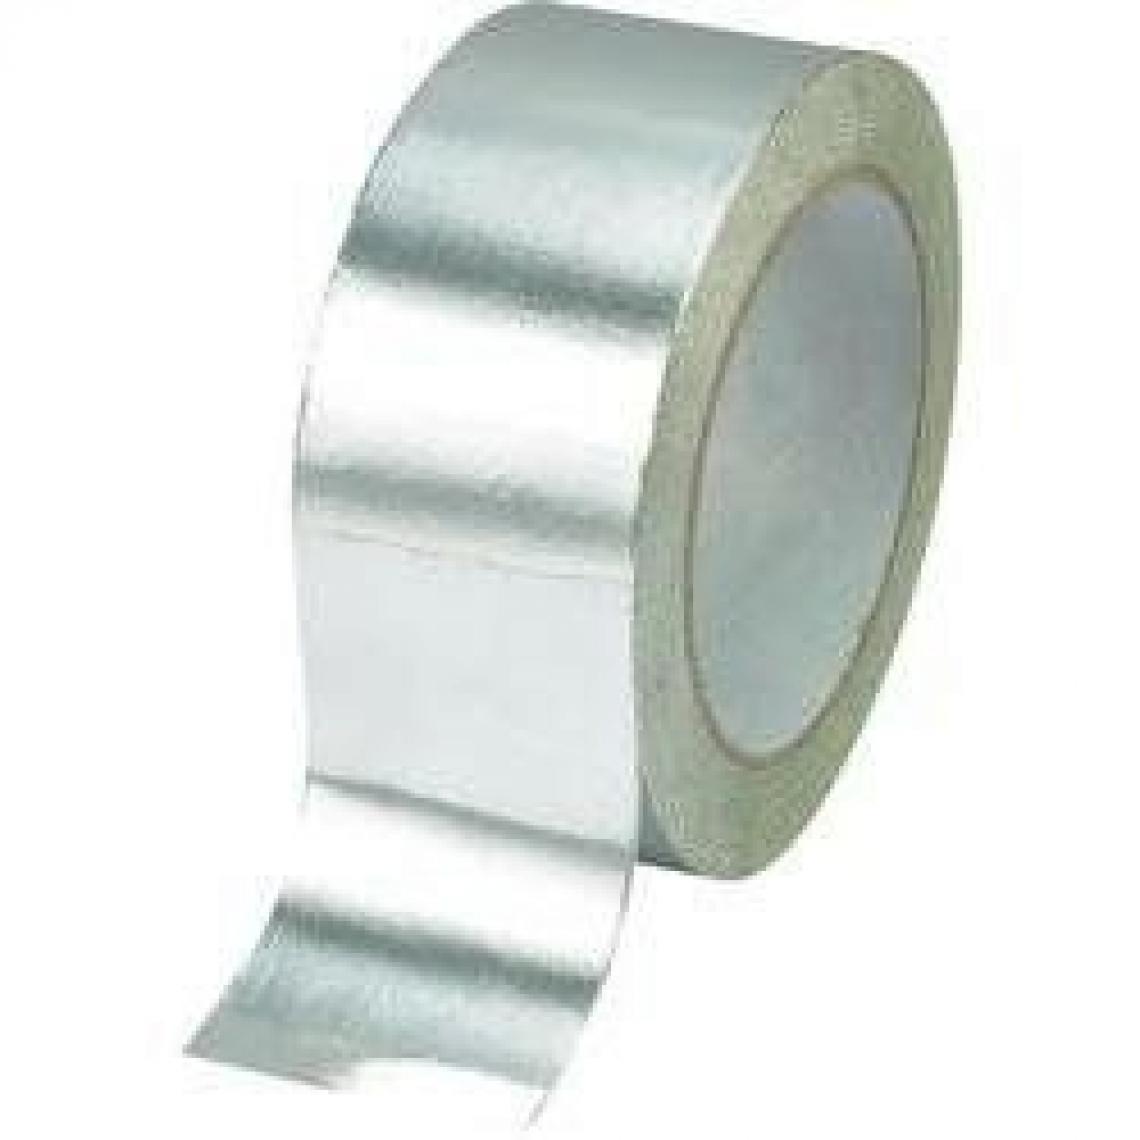 Inconnu - Ruban adhésif aluminium TRU COMPONENTS AFT-5050 1564032 argent (L x l) 50 m x 50 mm acrylique 1 rouleau(x) - Colle & adhésif